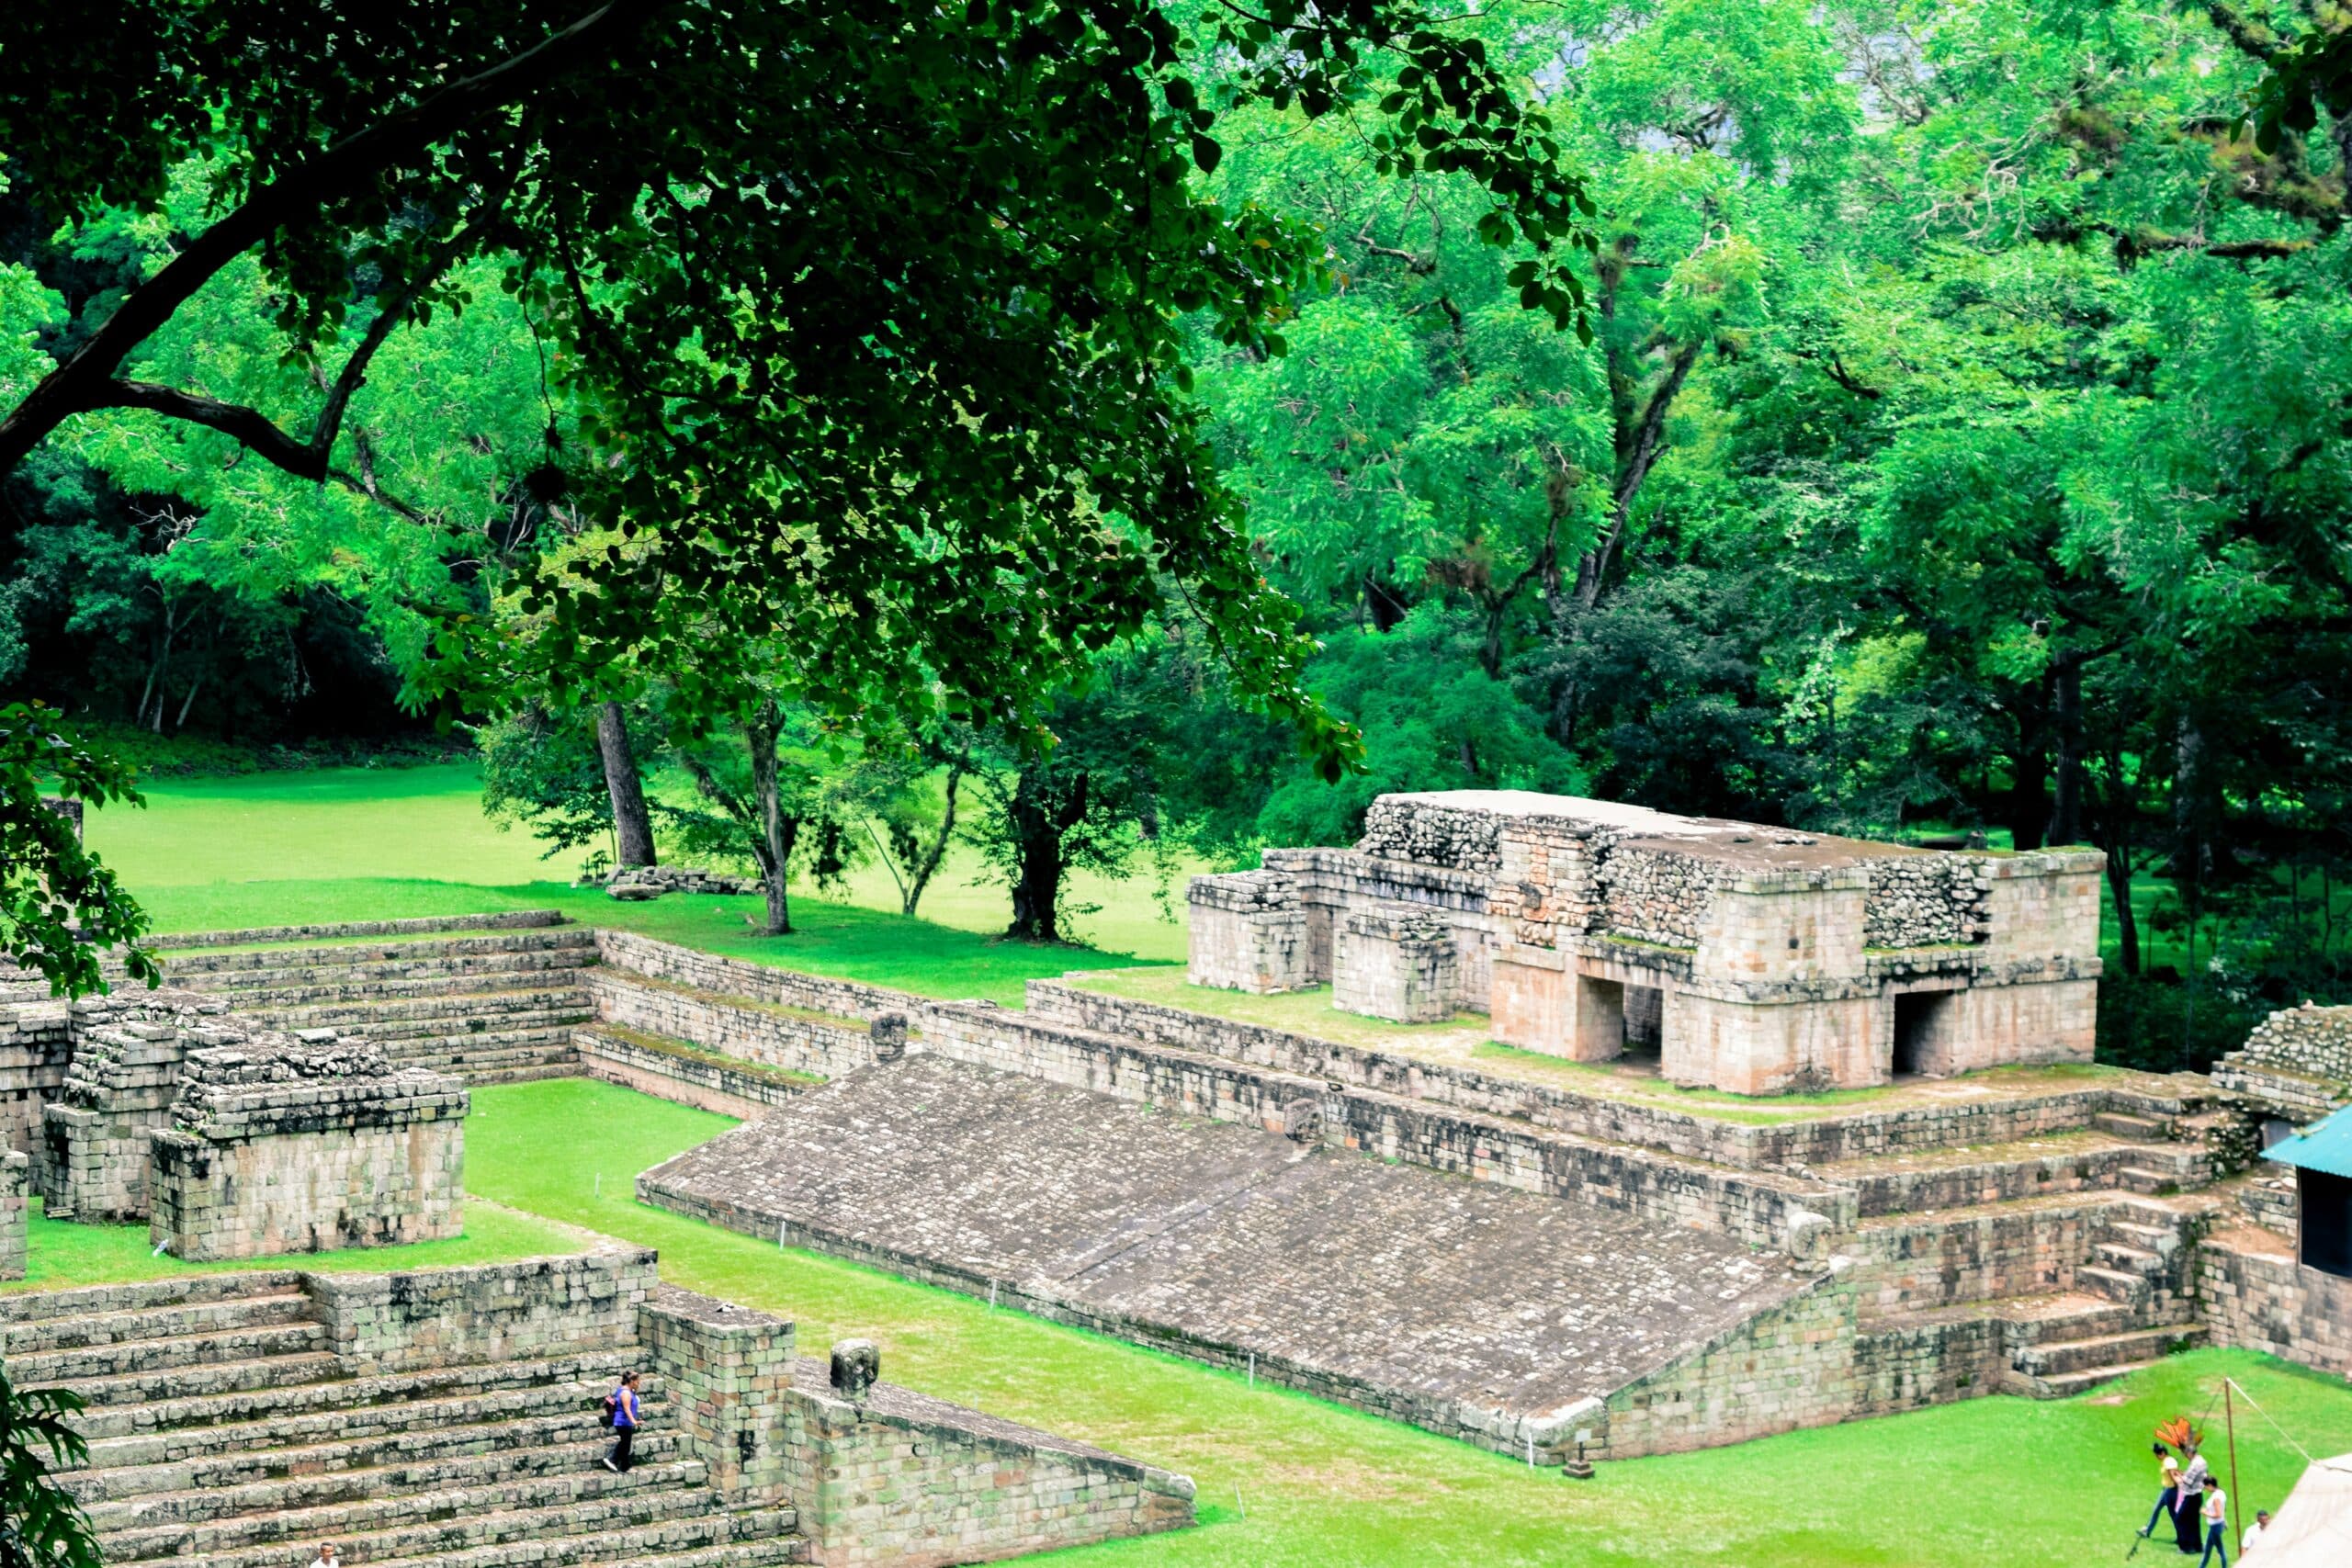 Sítio arqueológico do período da civilização Maia